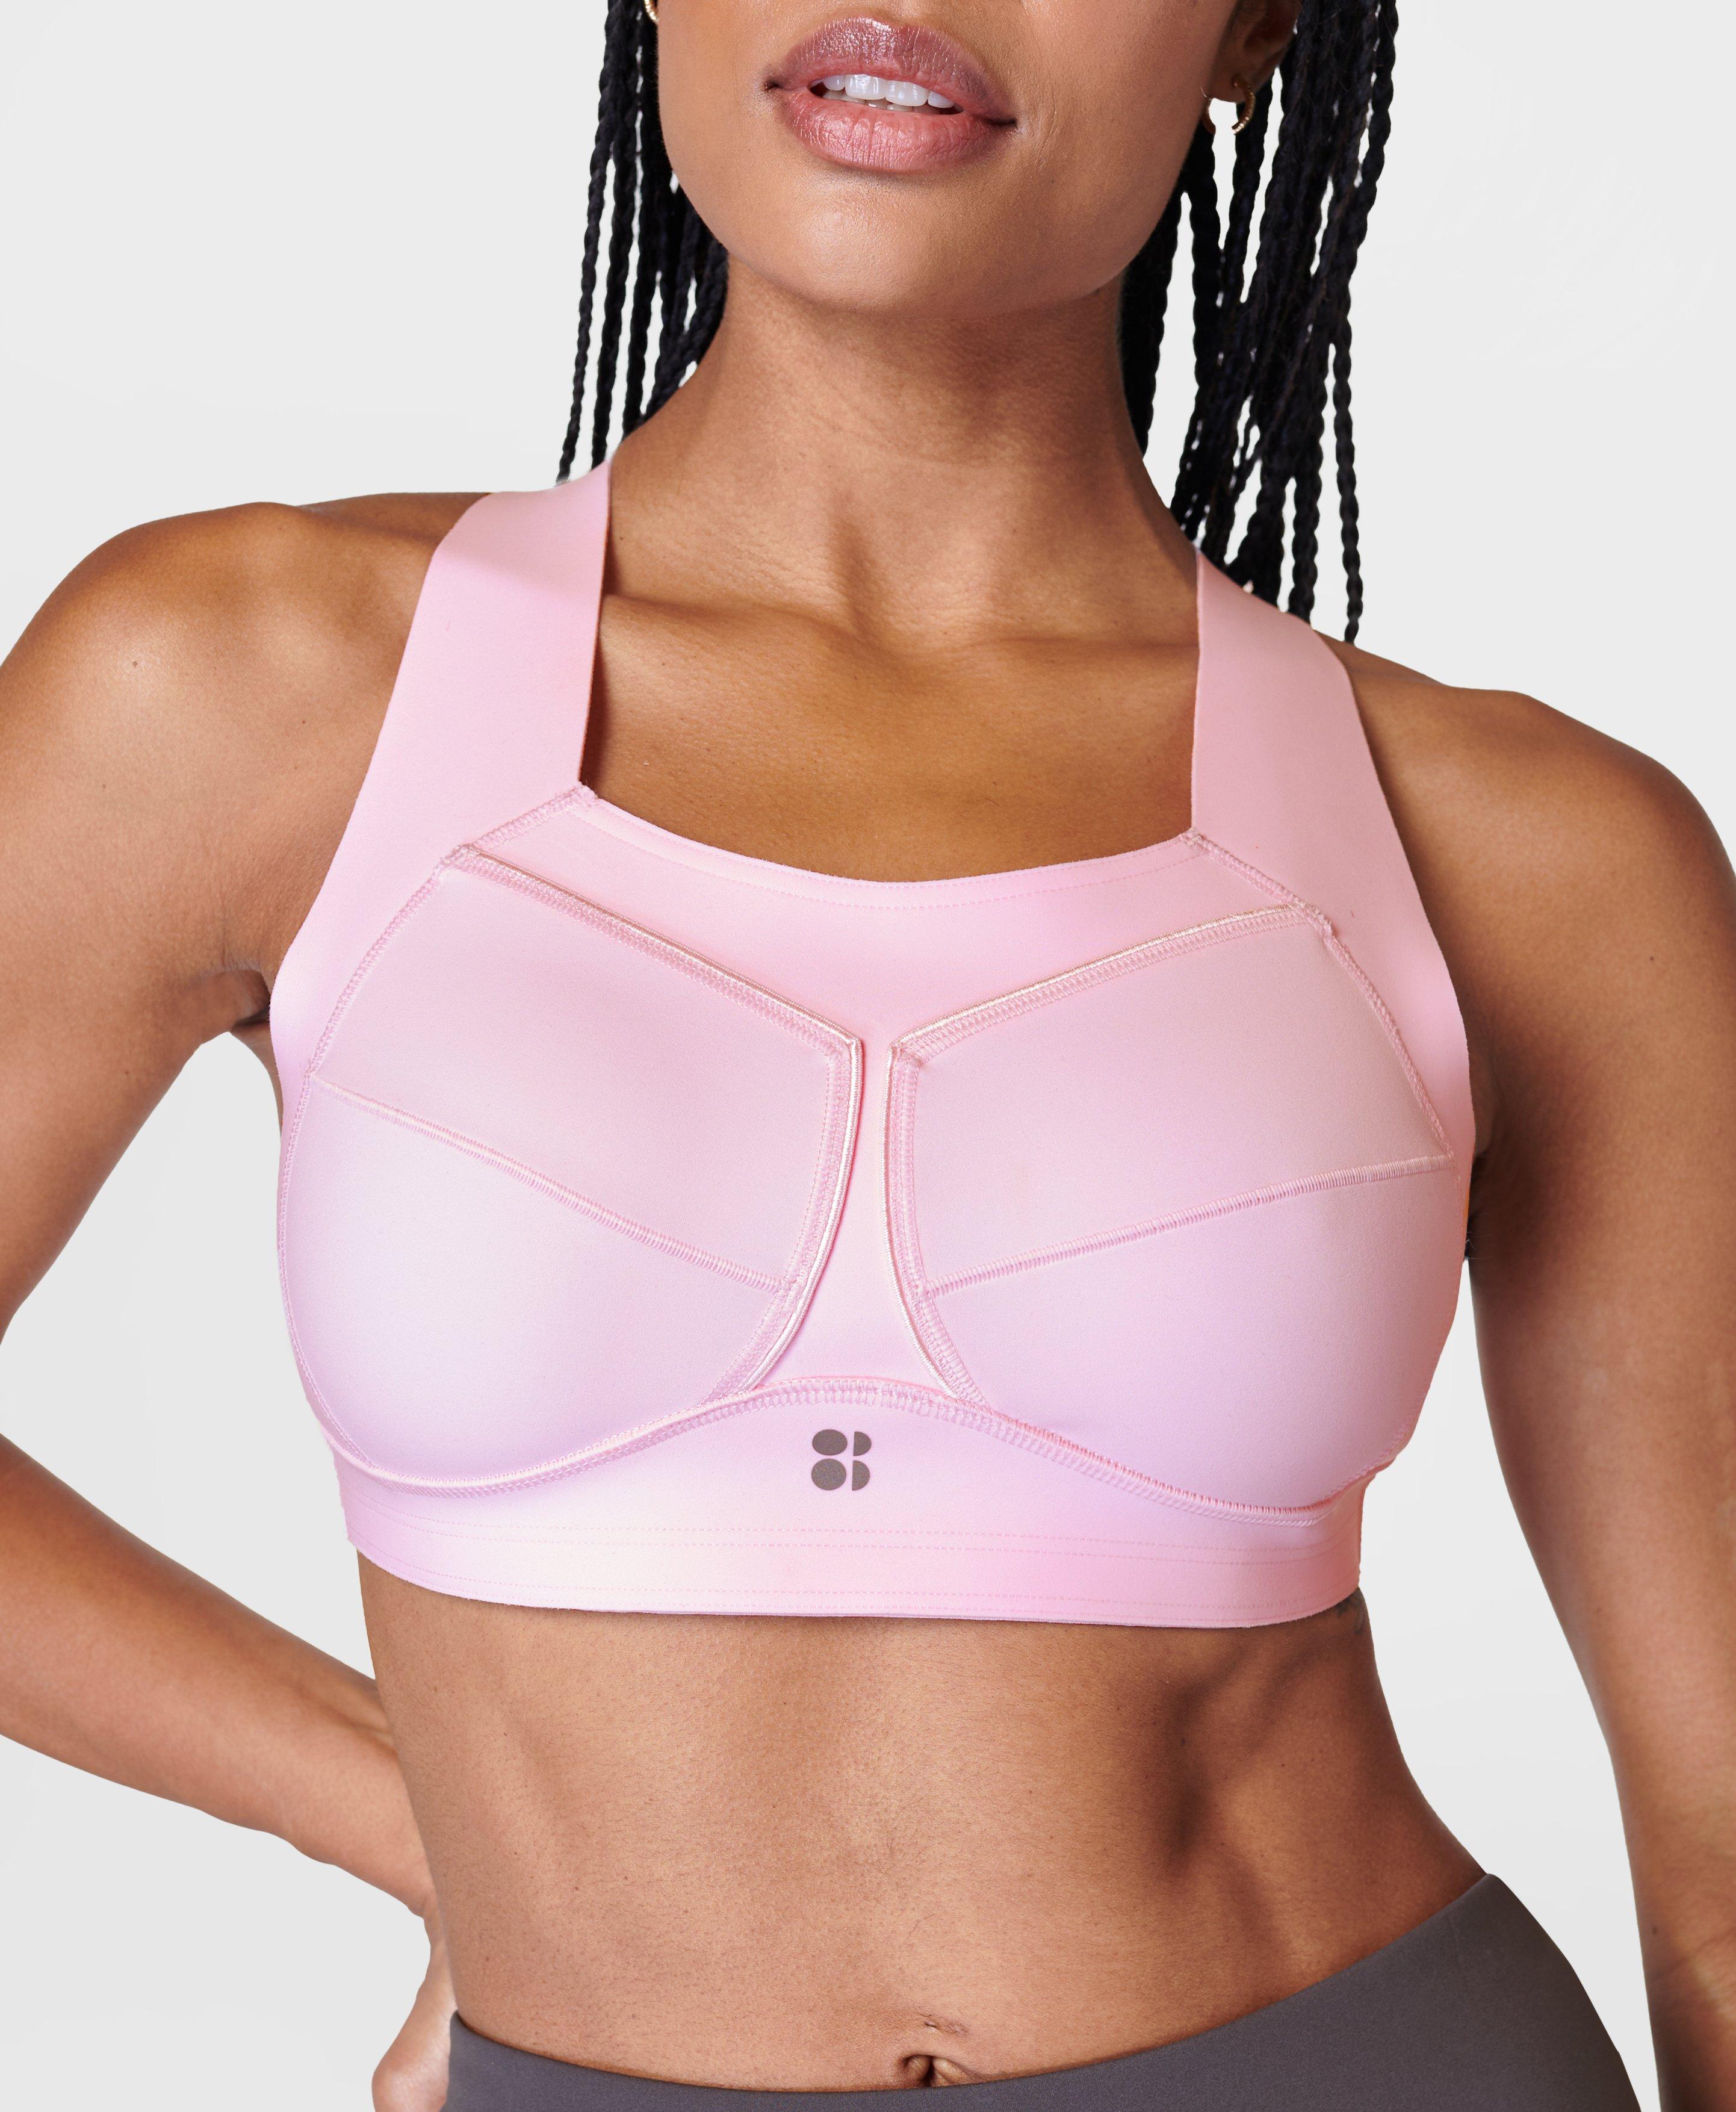 Sweaty Betty sports bra women's size medium pink  Low impact sports bra,  Women's sports bras, Sports bra